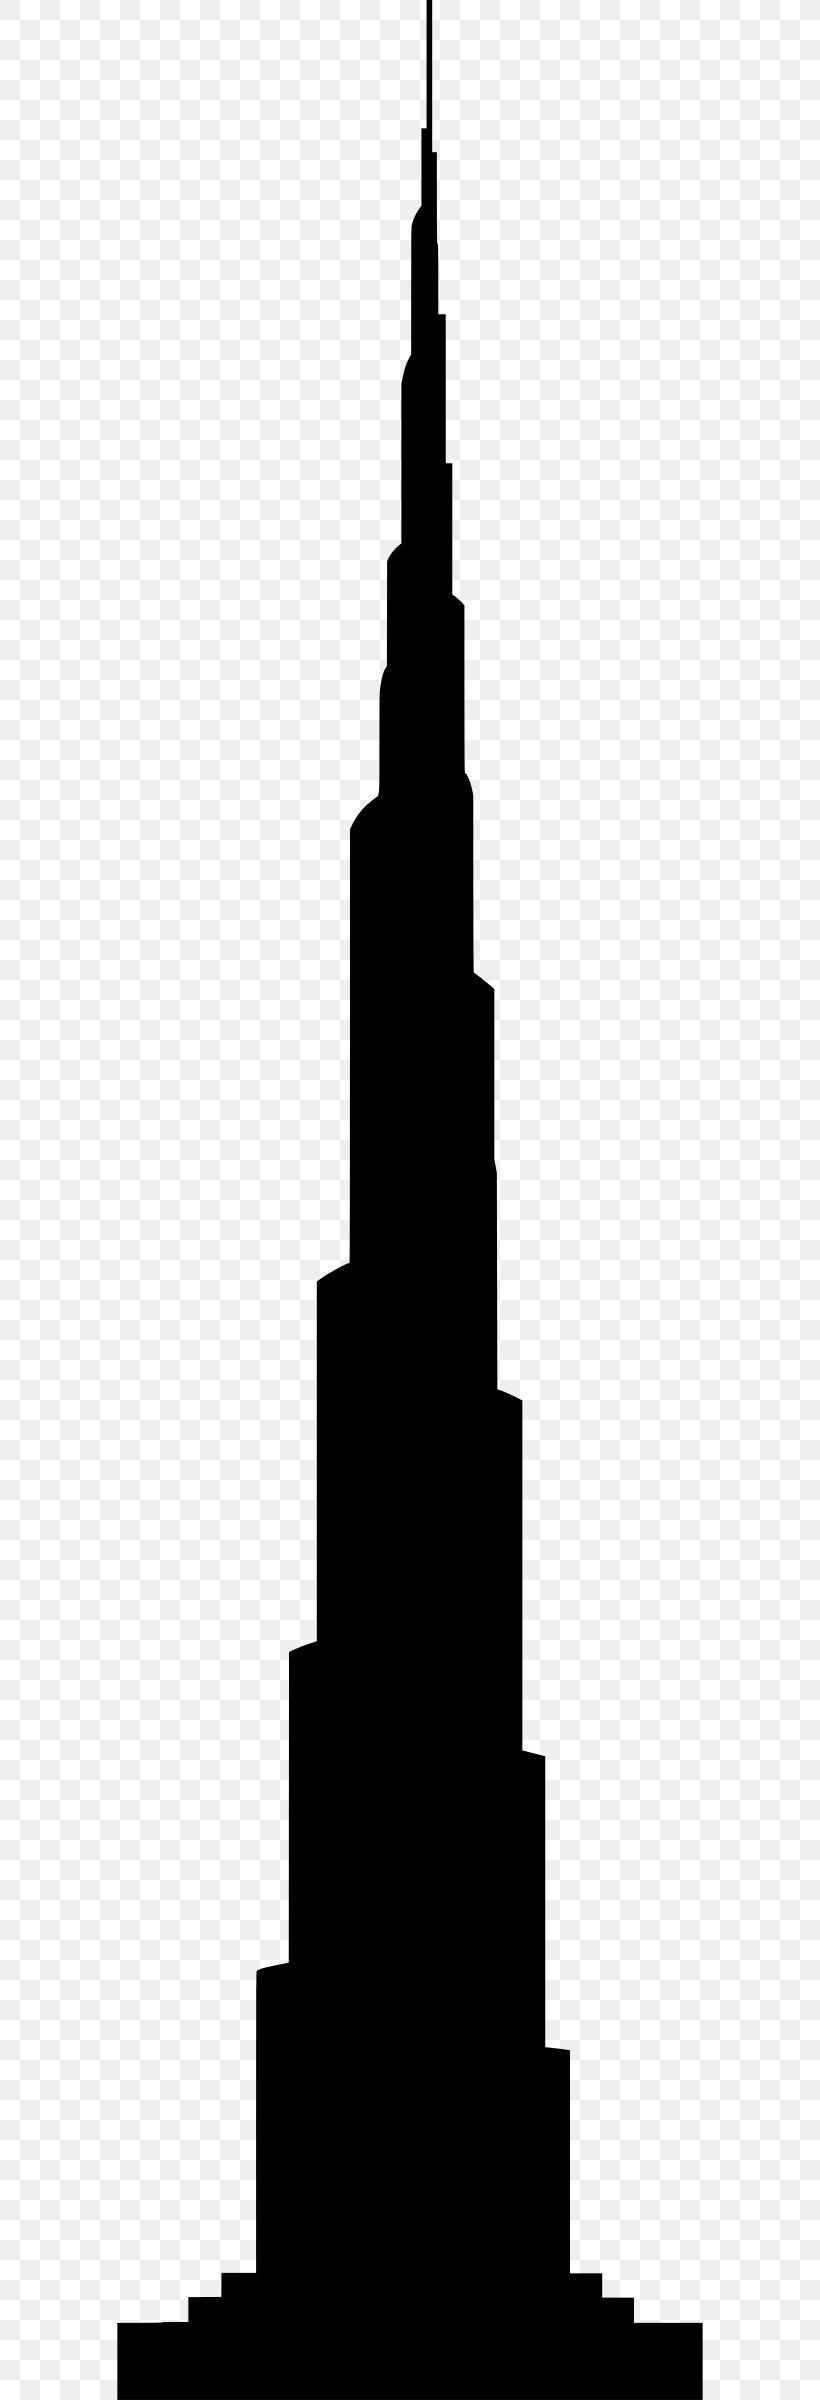 Burj Khalifa Burj Al Arab Silhouette Tower, PNG, 586x2400px, Burj Khalifa, Black And White, Building, Burj Al Arab, Drawing Download Free